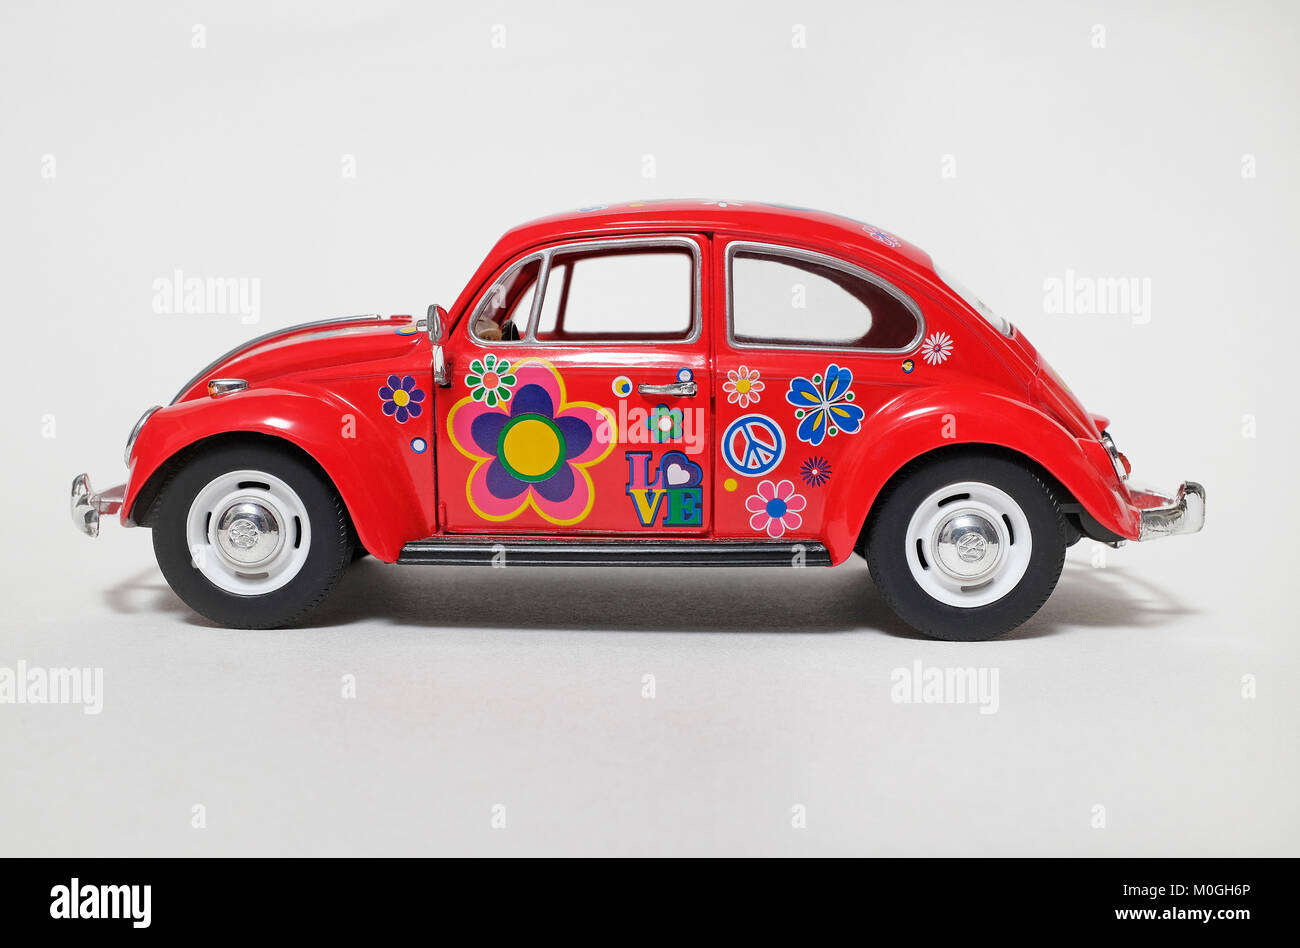 VW-Wagen Mit VW-Käfer, Der Weihnachtsgeschenke Mit Weißer Farbe Trägt  Redaktionelles Bild - Bild von kreativ, hintergrund: 164943075